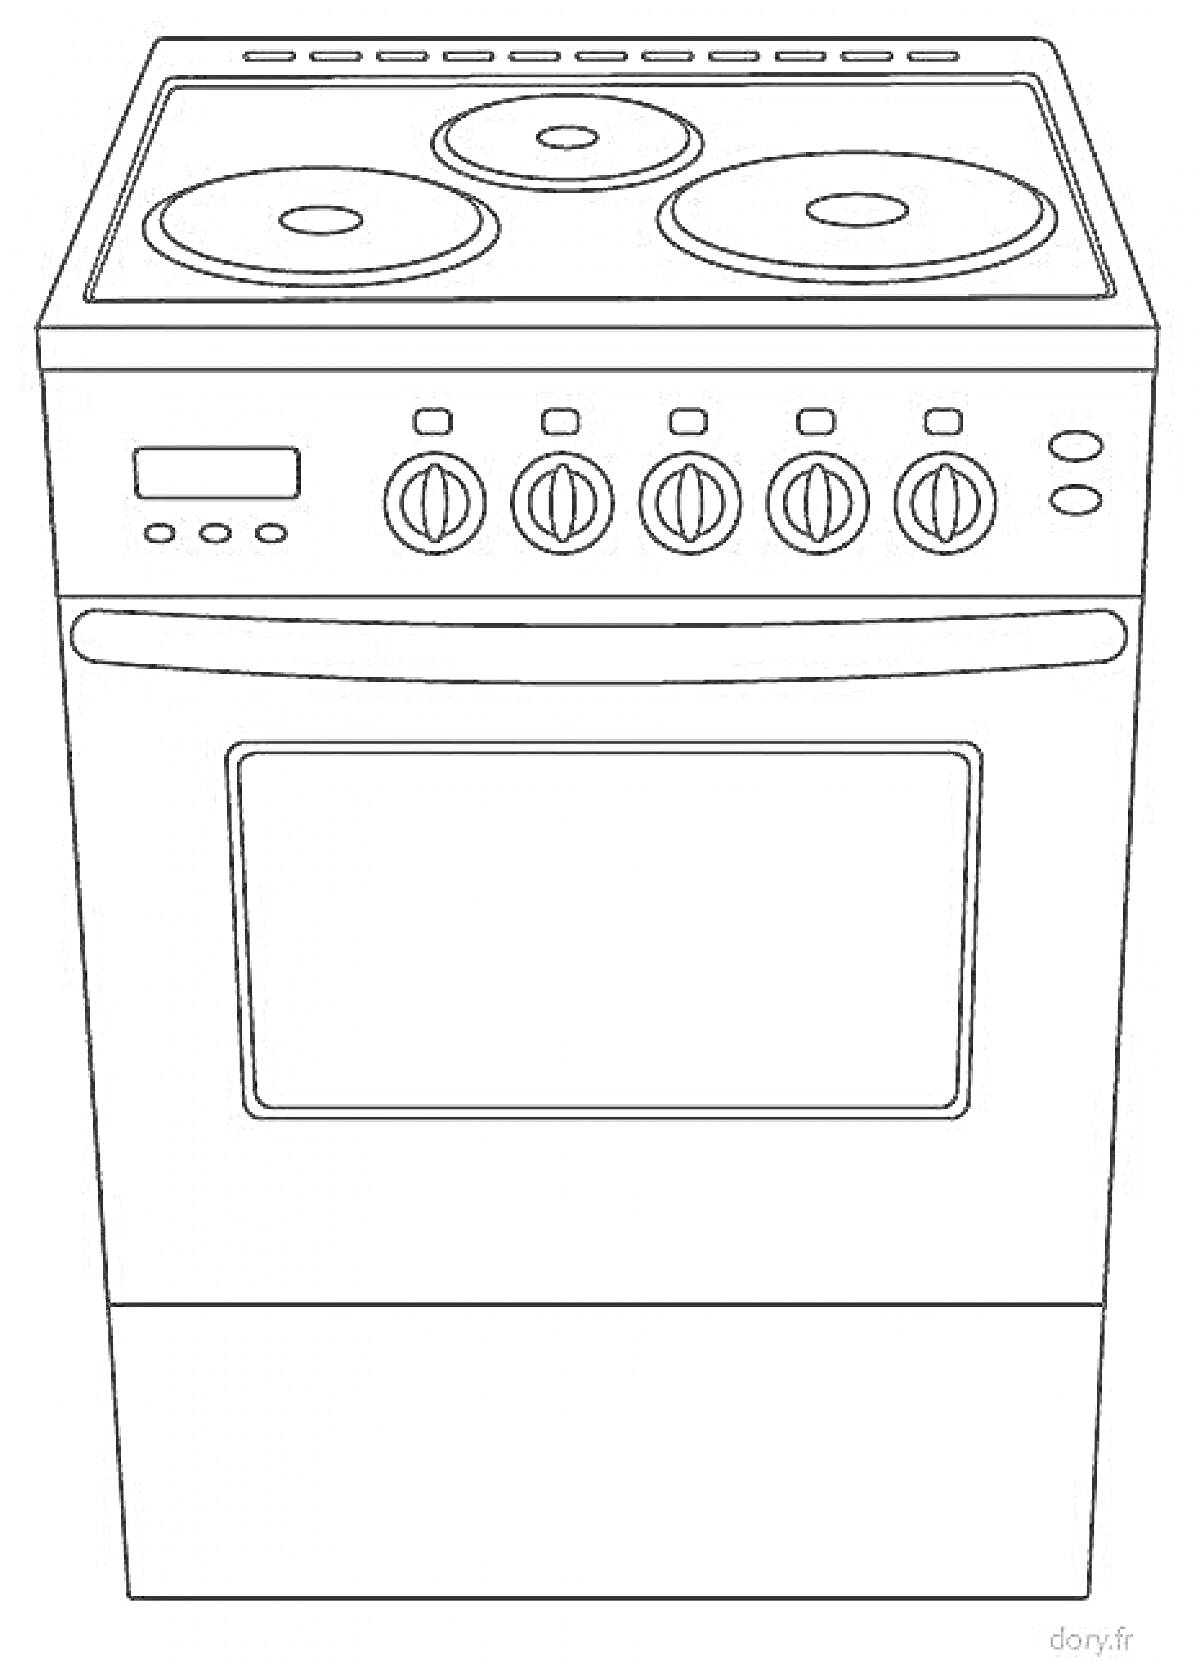 Раскраска Плита с четырьмя конфорками, панелью управления и духовкой